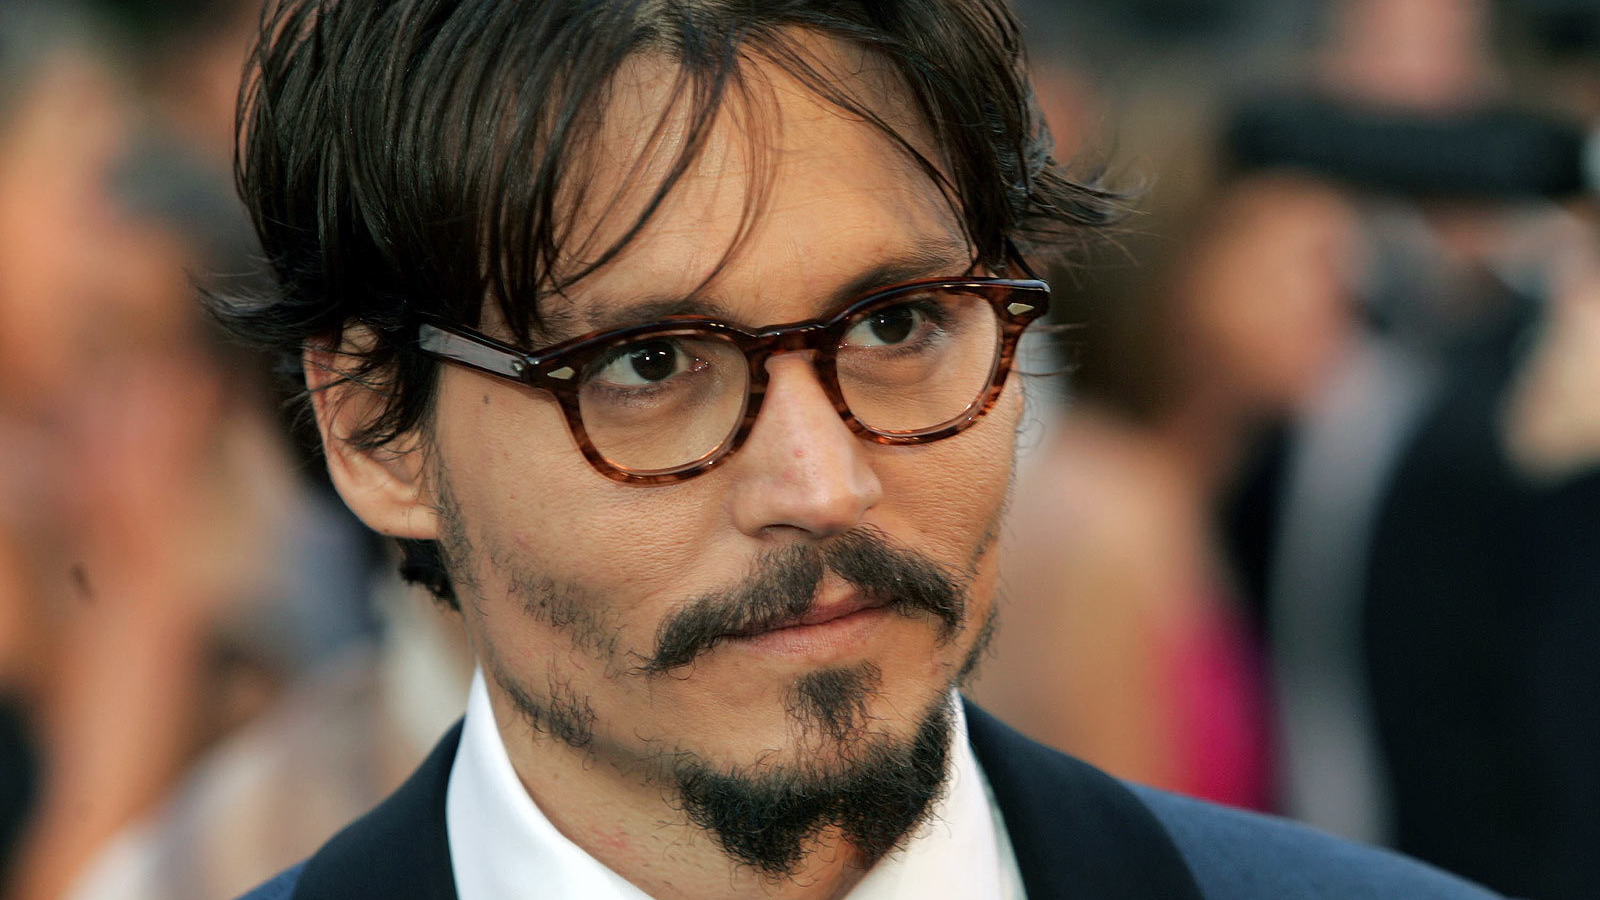 Popular Actor Johnny Depp